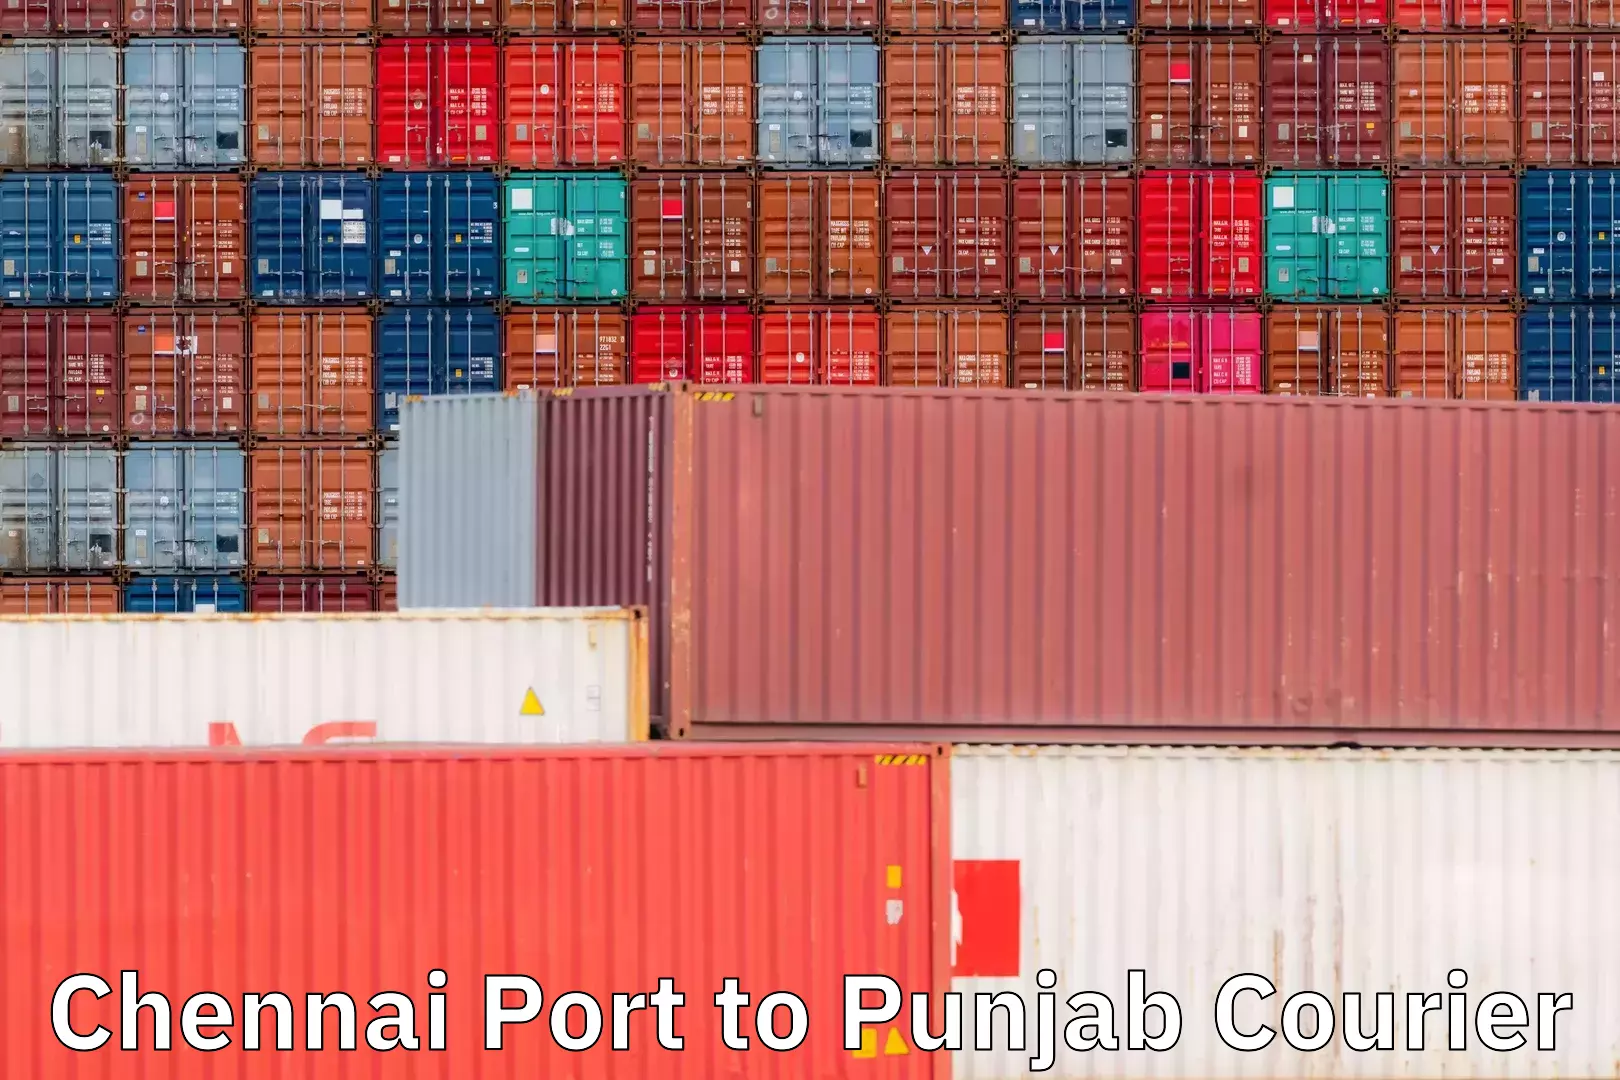 Courier service comparison Chennai Port to Punjab